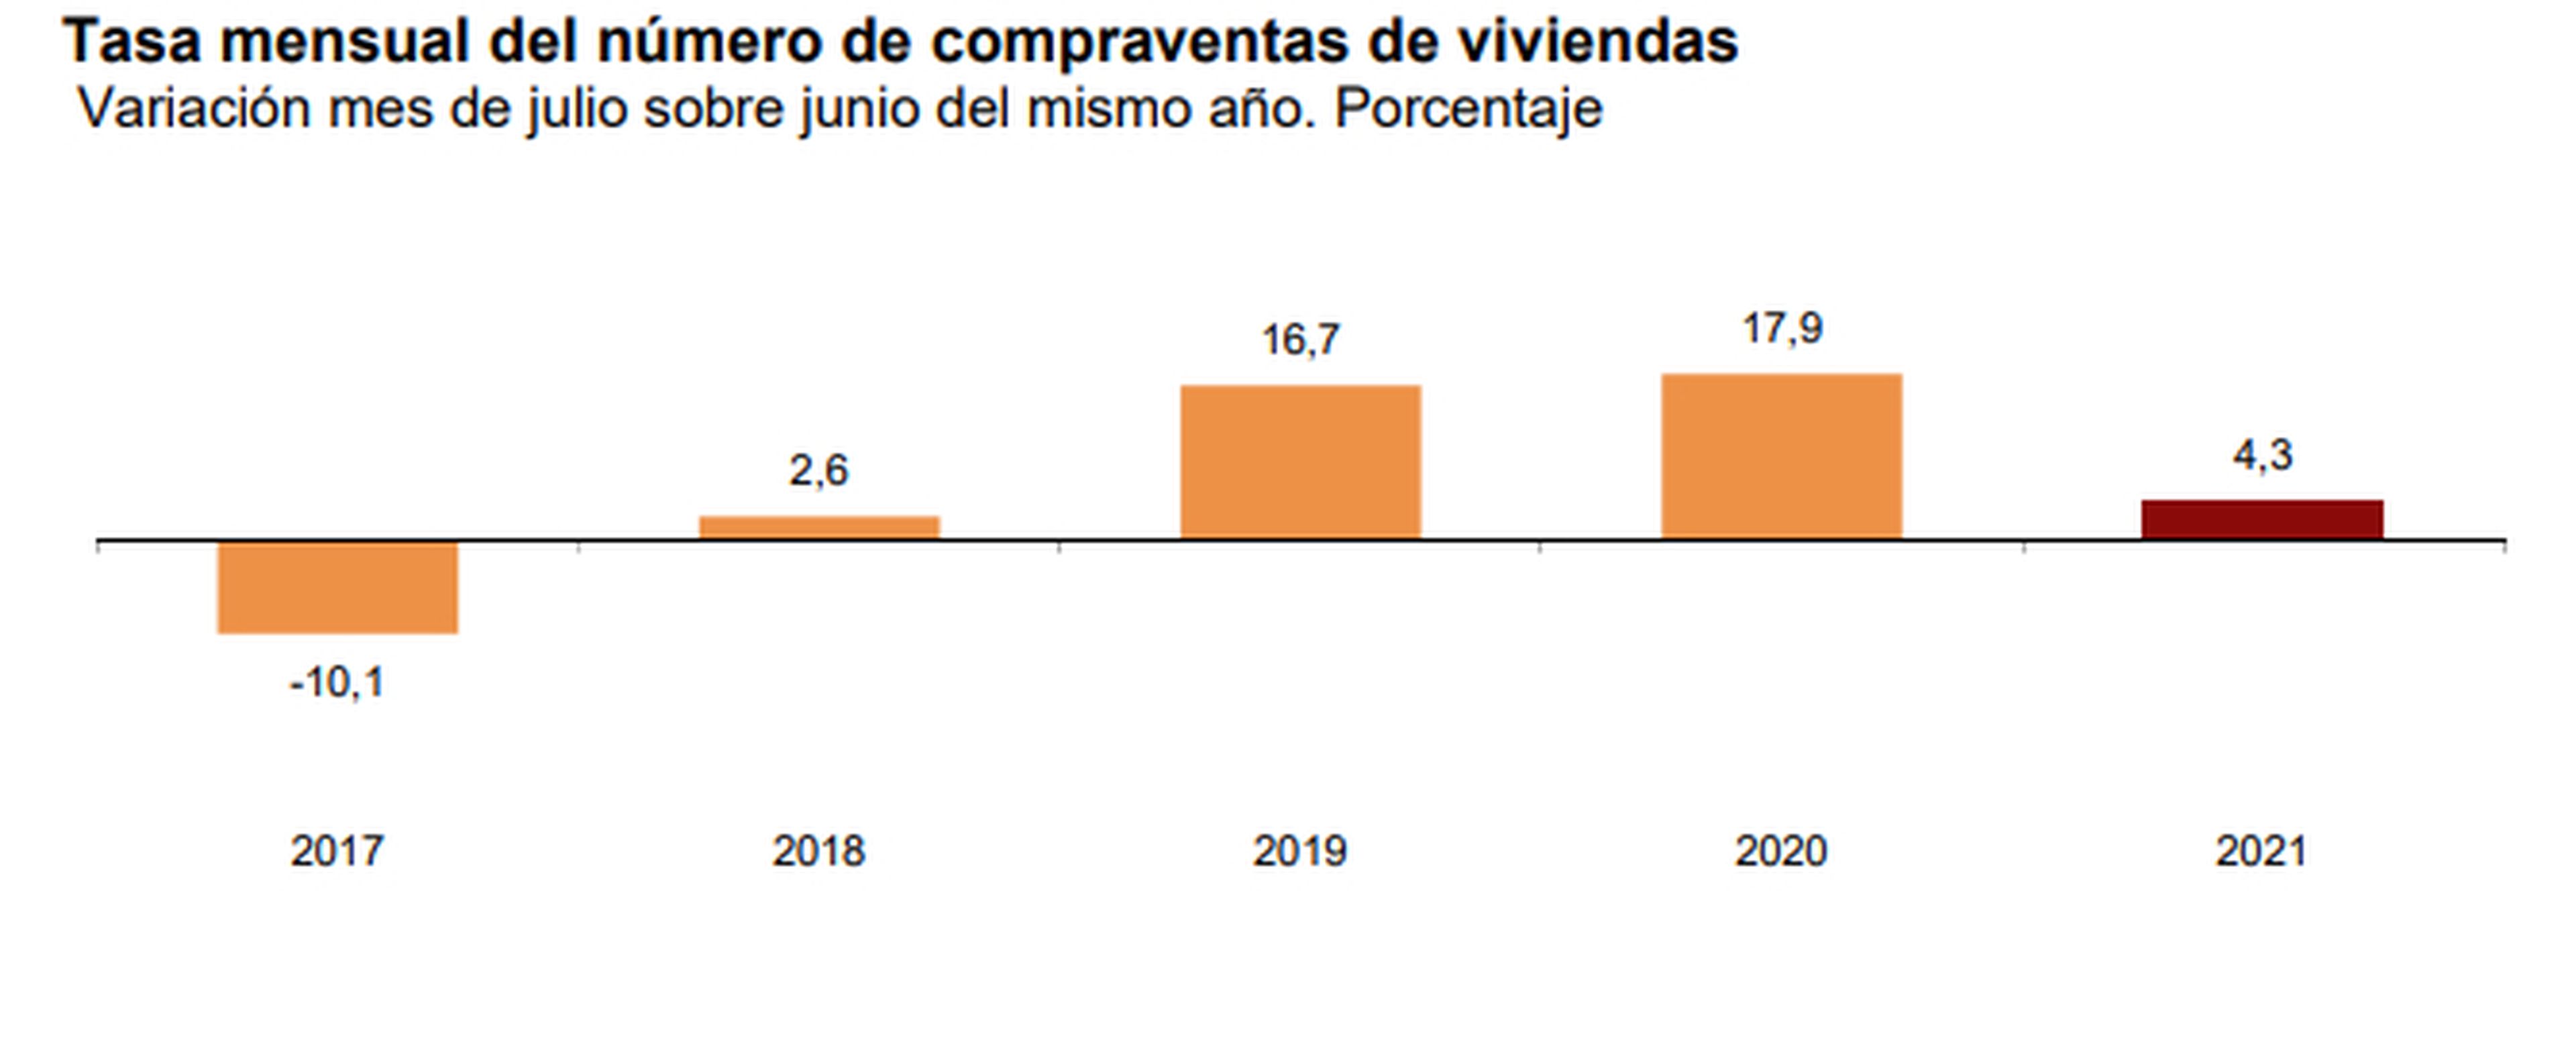 Crecimiento mensual de la compraventa de viviendas en julio entre 2017 y 2021